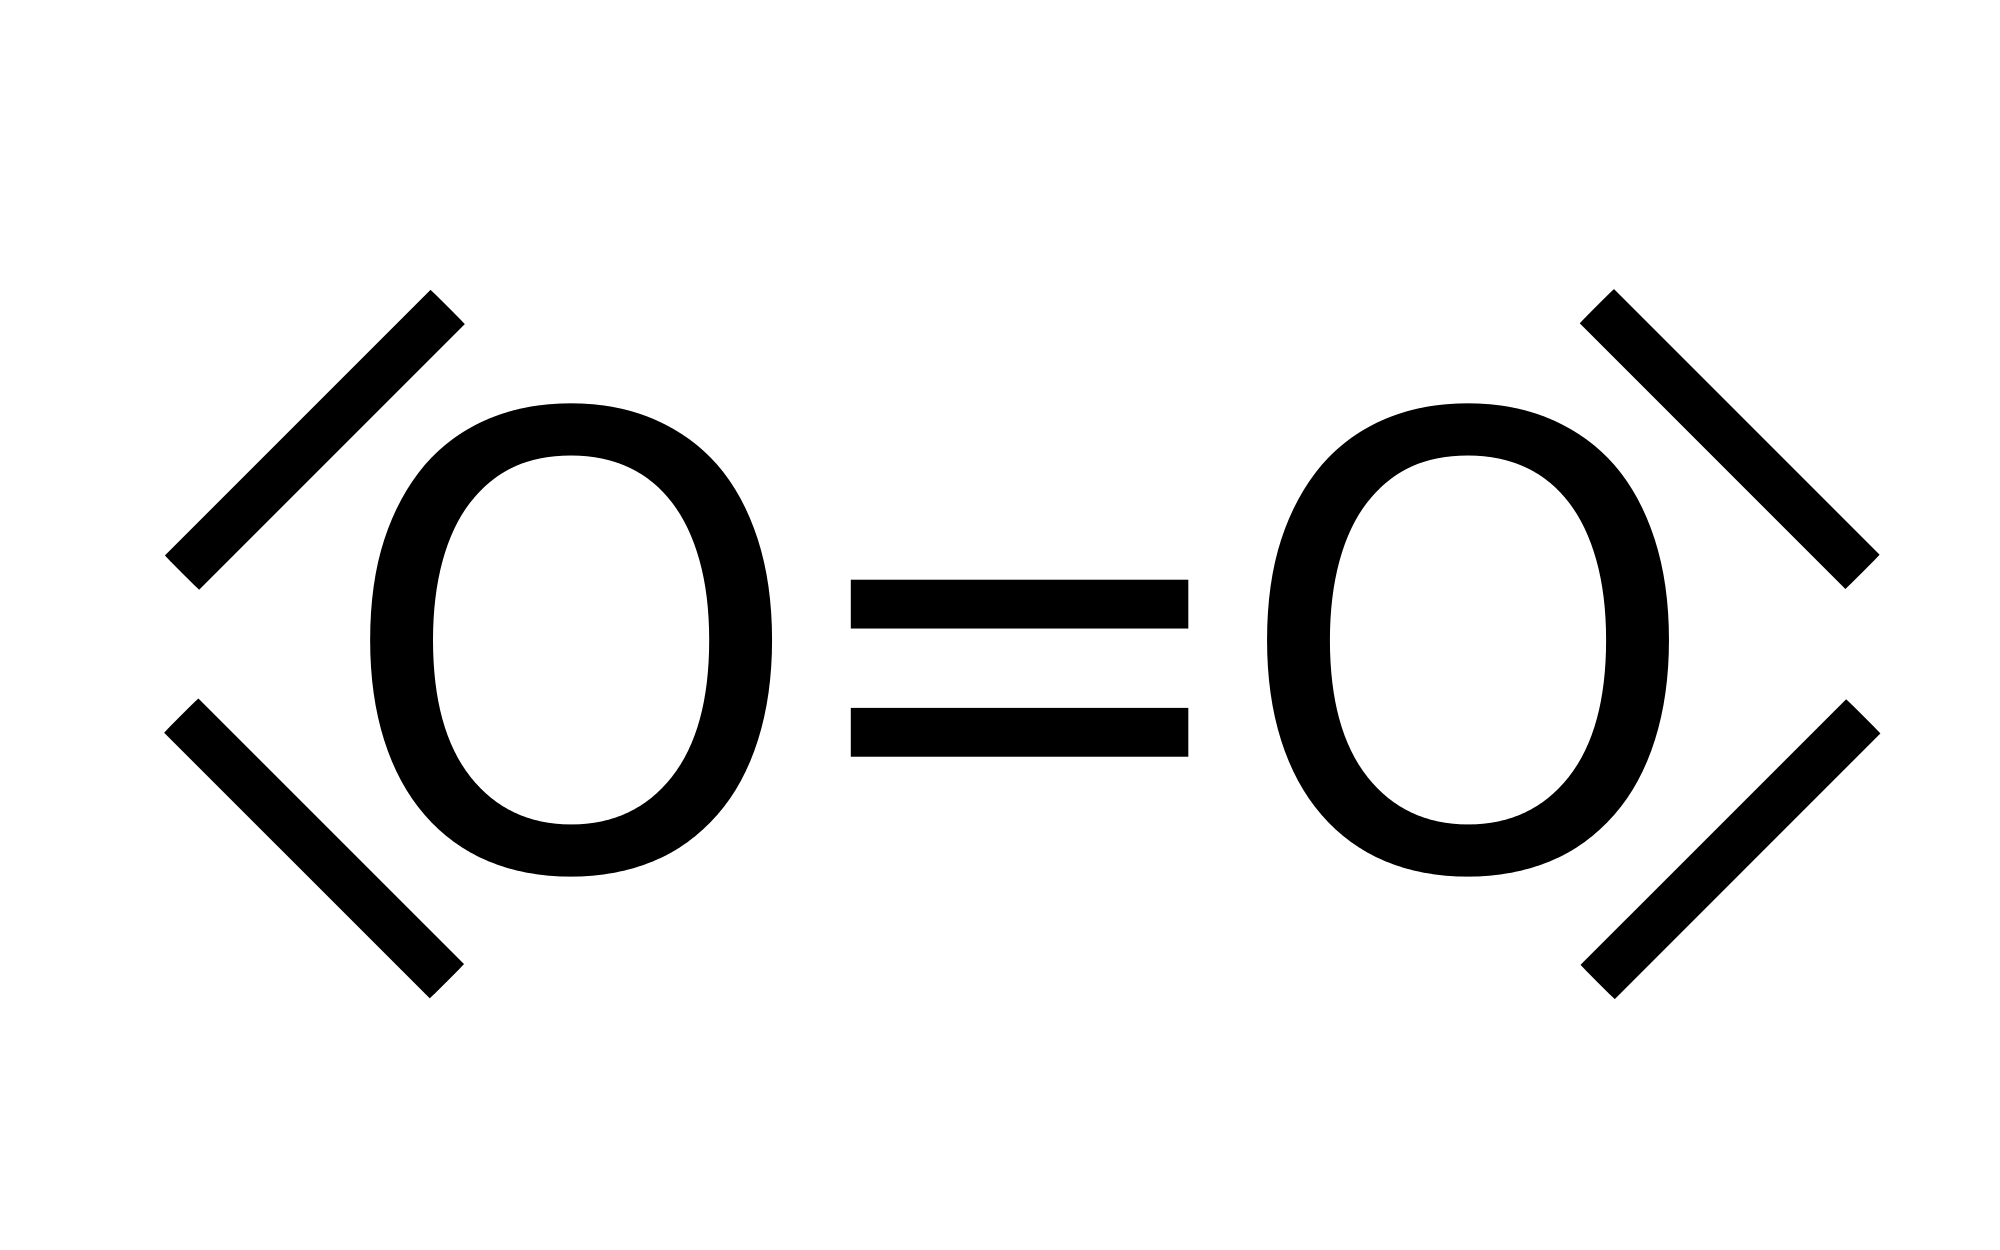 Abbildung 6: Ein Sauerstoffmolekül mit EN=3,44; Van-der-Waals-Kräfte ebenfalls möglich